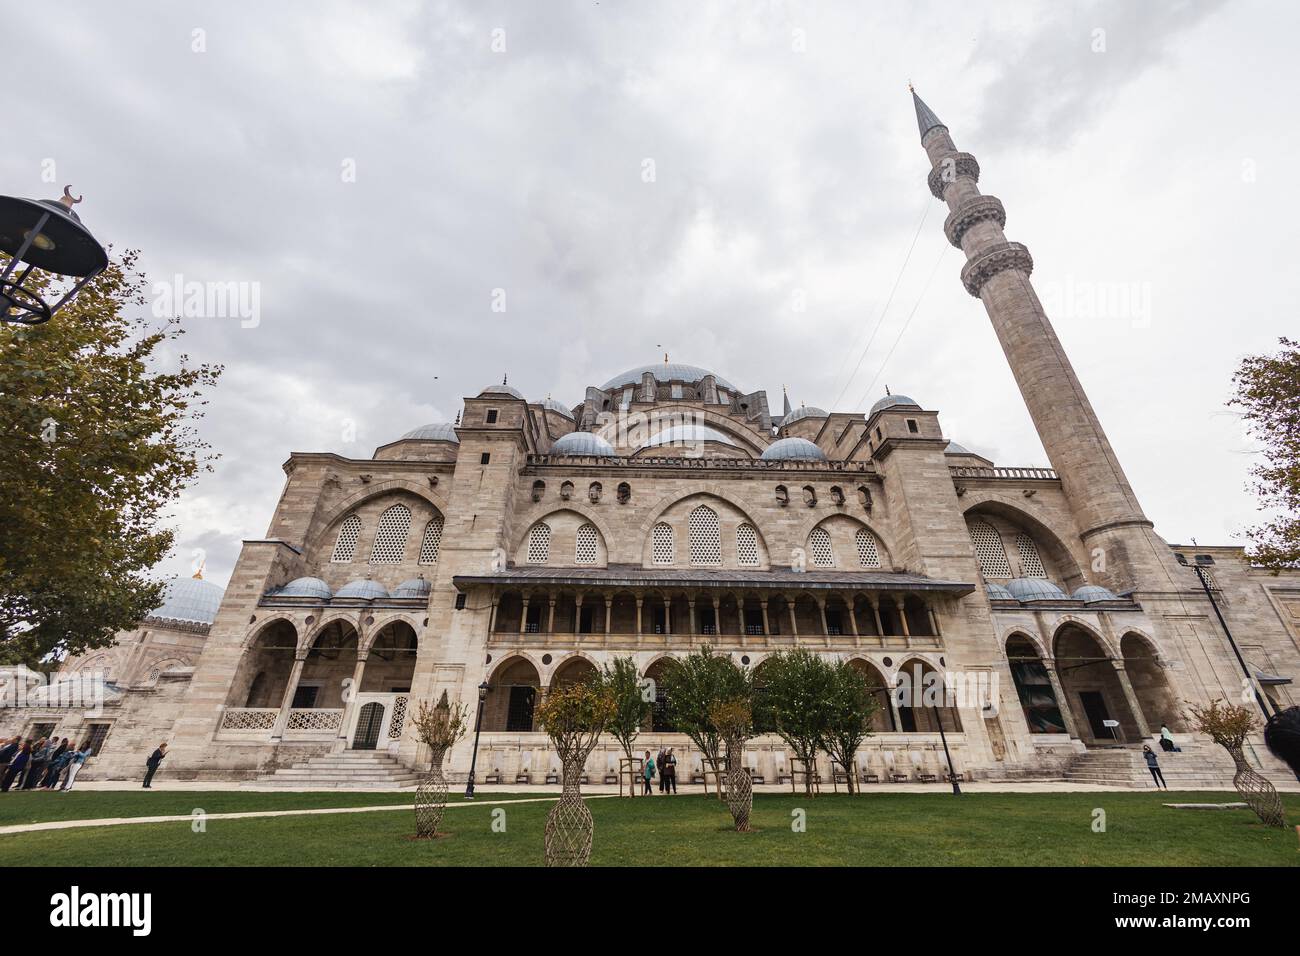 Mosquée Shehzade Camii. Cour avec une fontaine de la mosquée Shehzade Camii. Monuments de Turquie. lieu touristique. Turquie. Istanbul Banque D'Images